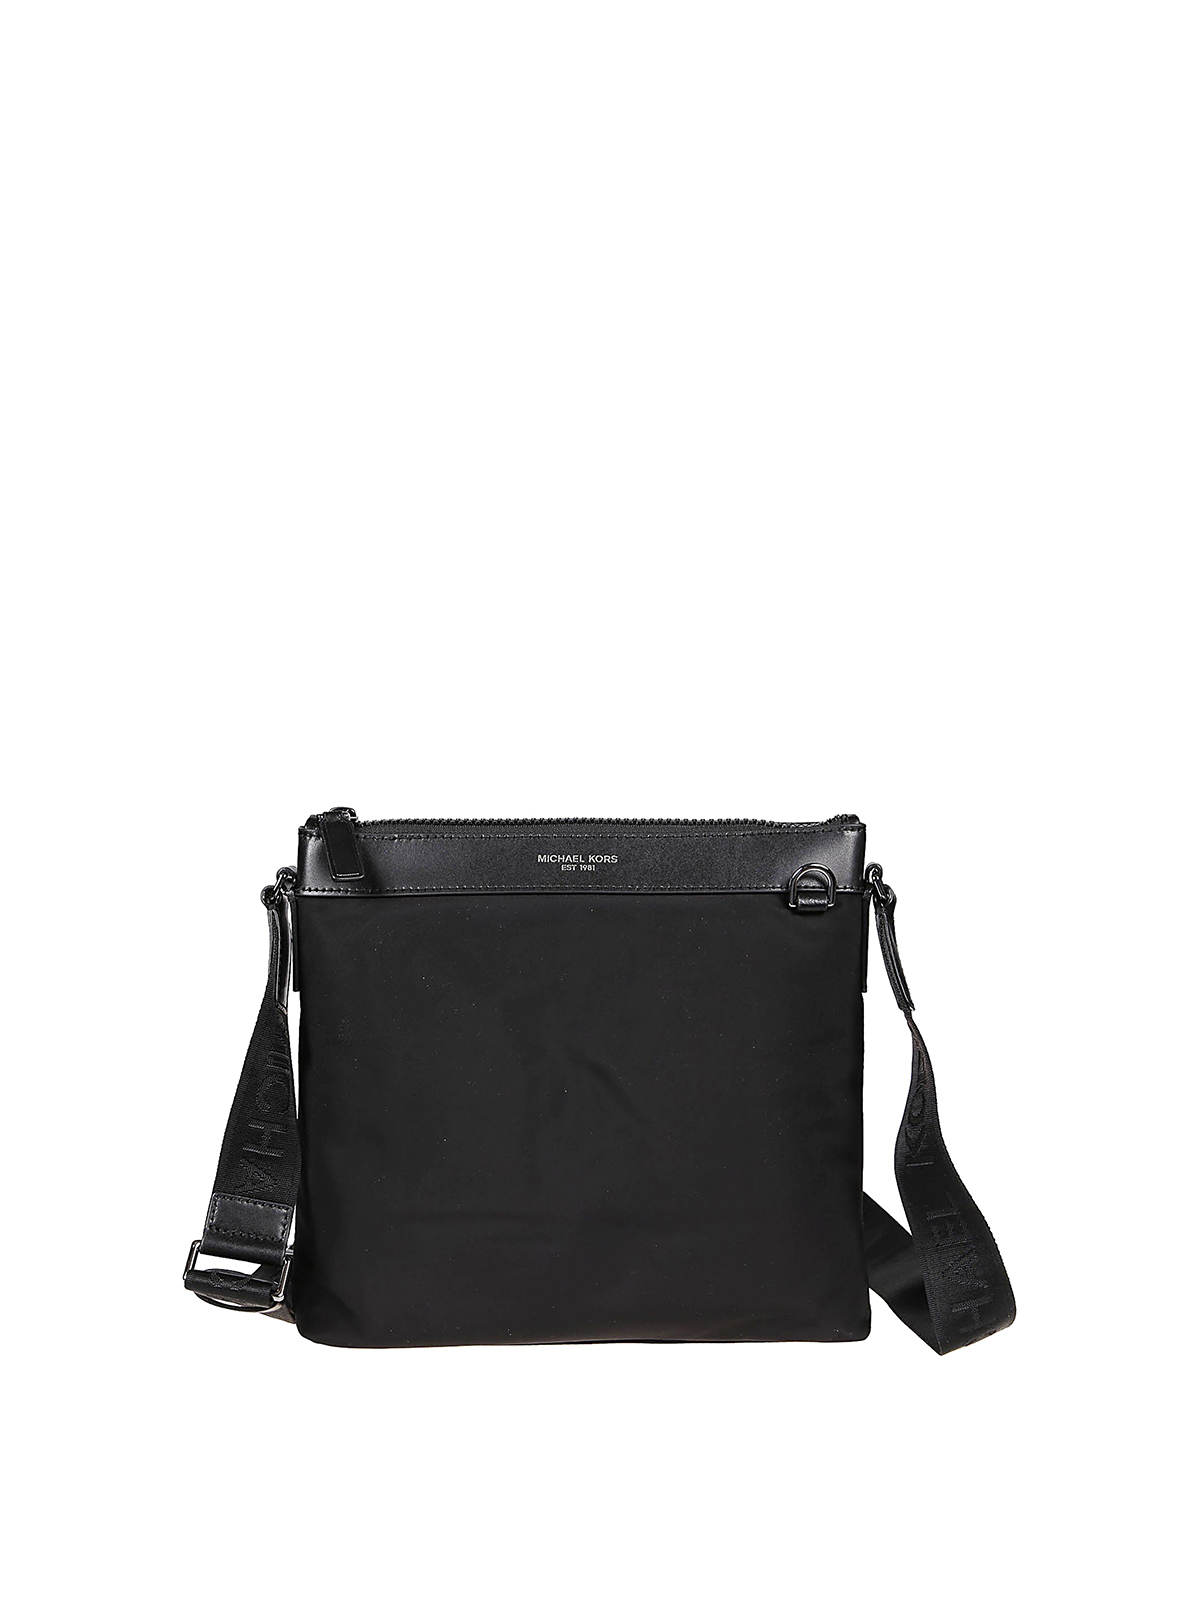 Shop Michael Kors Brooklyn Large Black Shoulder Bag